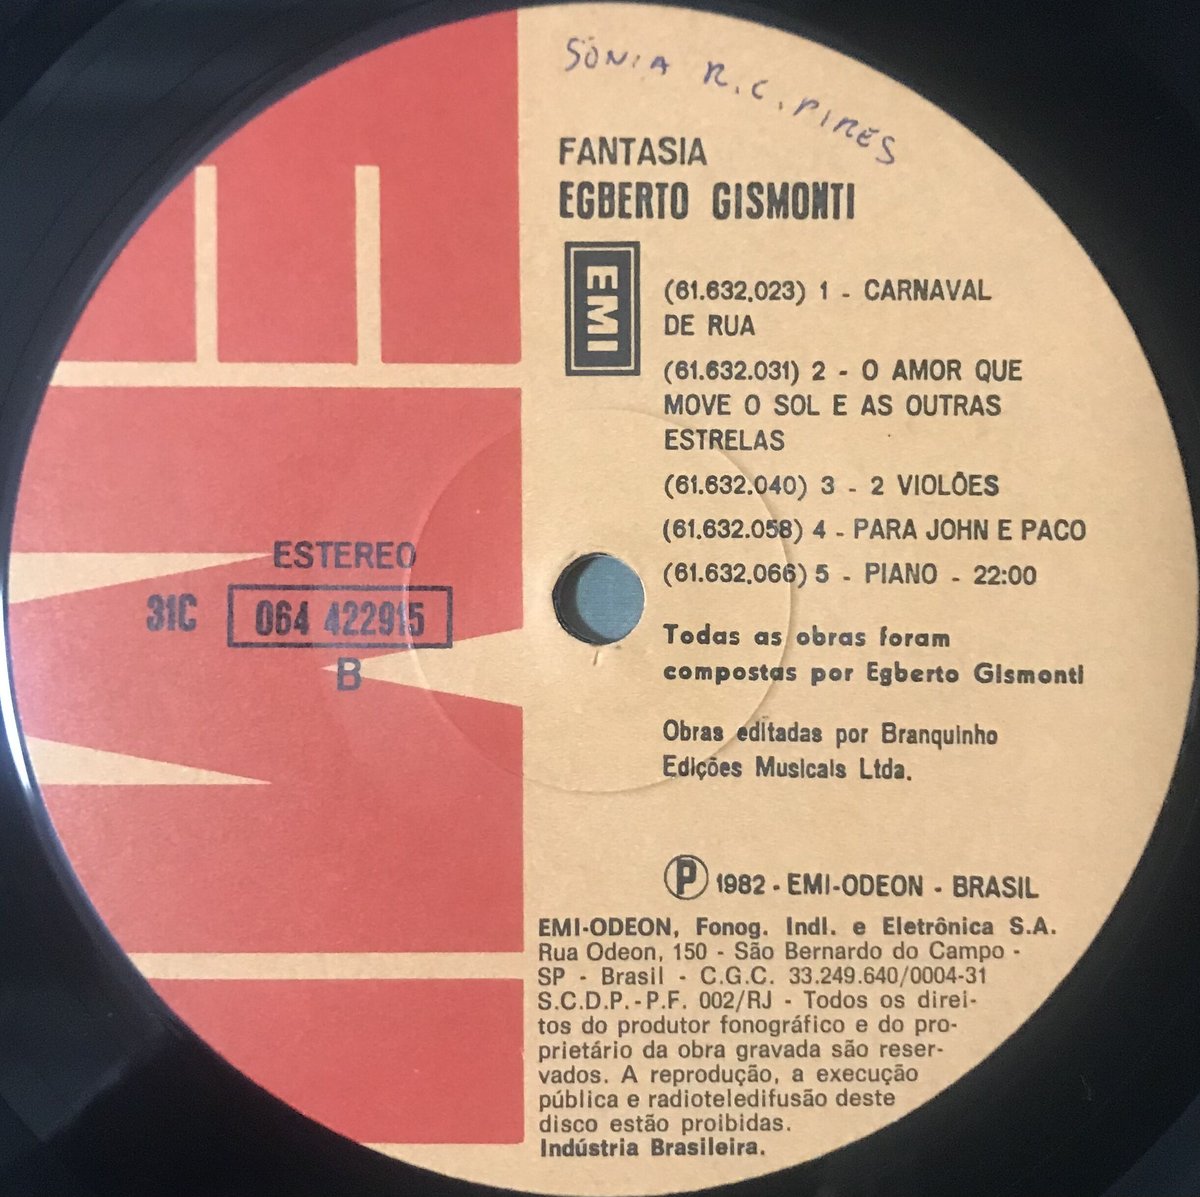 【廃盤LP】Egberto Gismonti / Fantasia